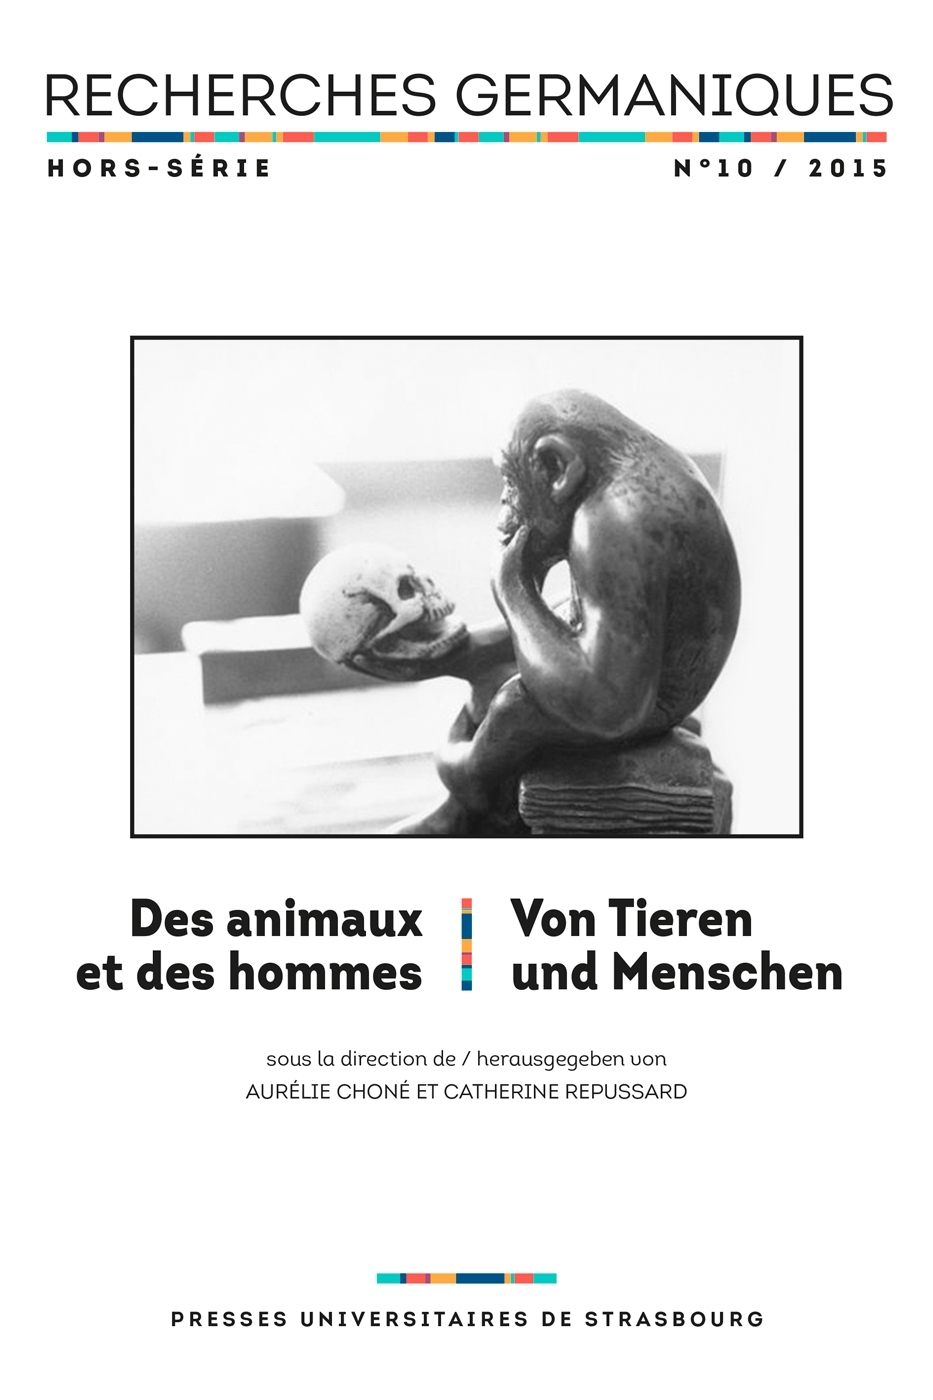 Recherches germaniques, hors-série n° 10 : Des animaux et des hommes, Von Tieren und Menschen